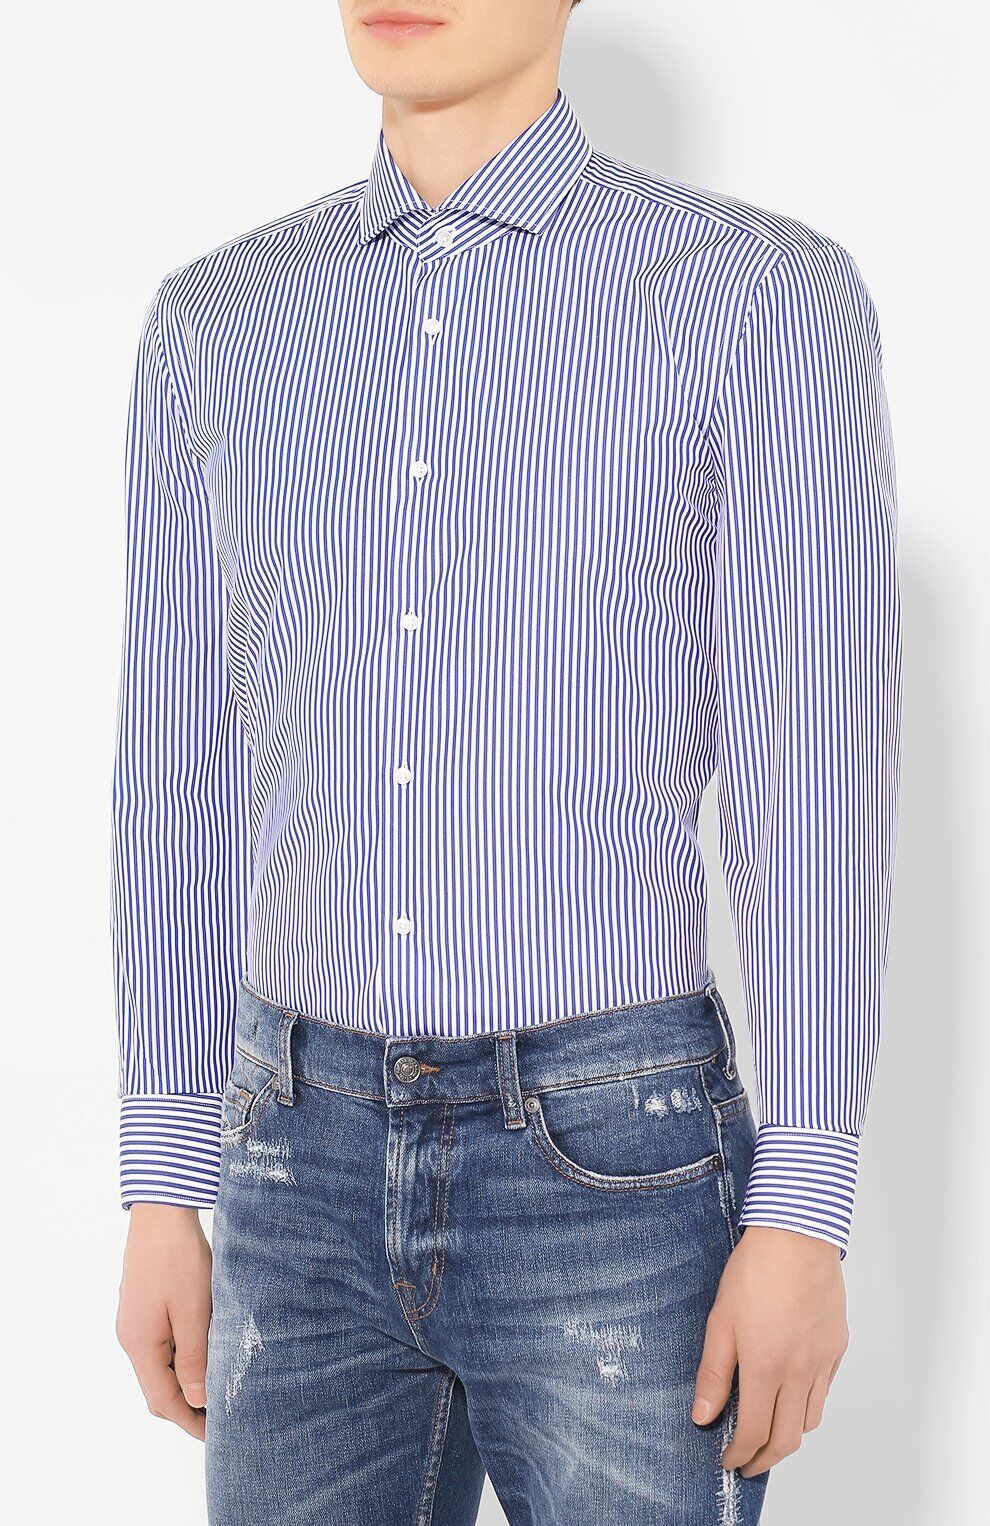 doel alleen Hover Hugo Boss Men's 'Jason' Slim Fit White Blue Striped Dress Shirt 15.75 L,  34/35 | eBay